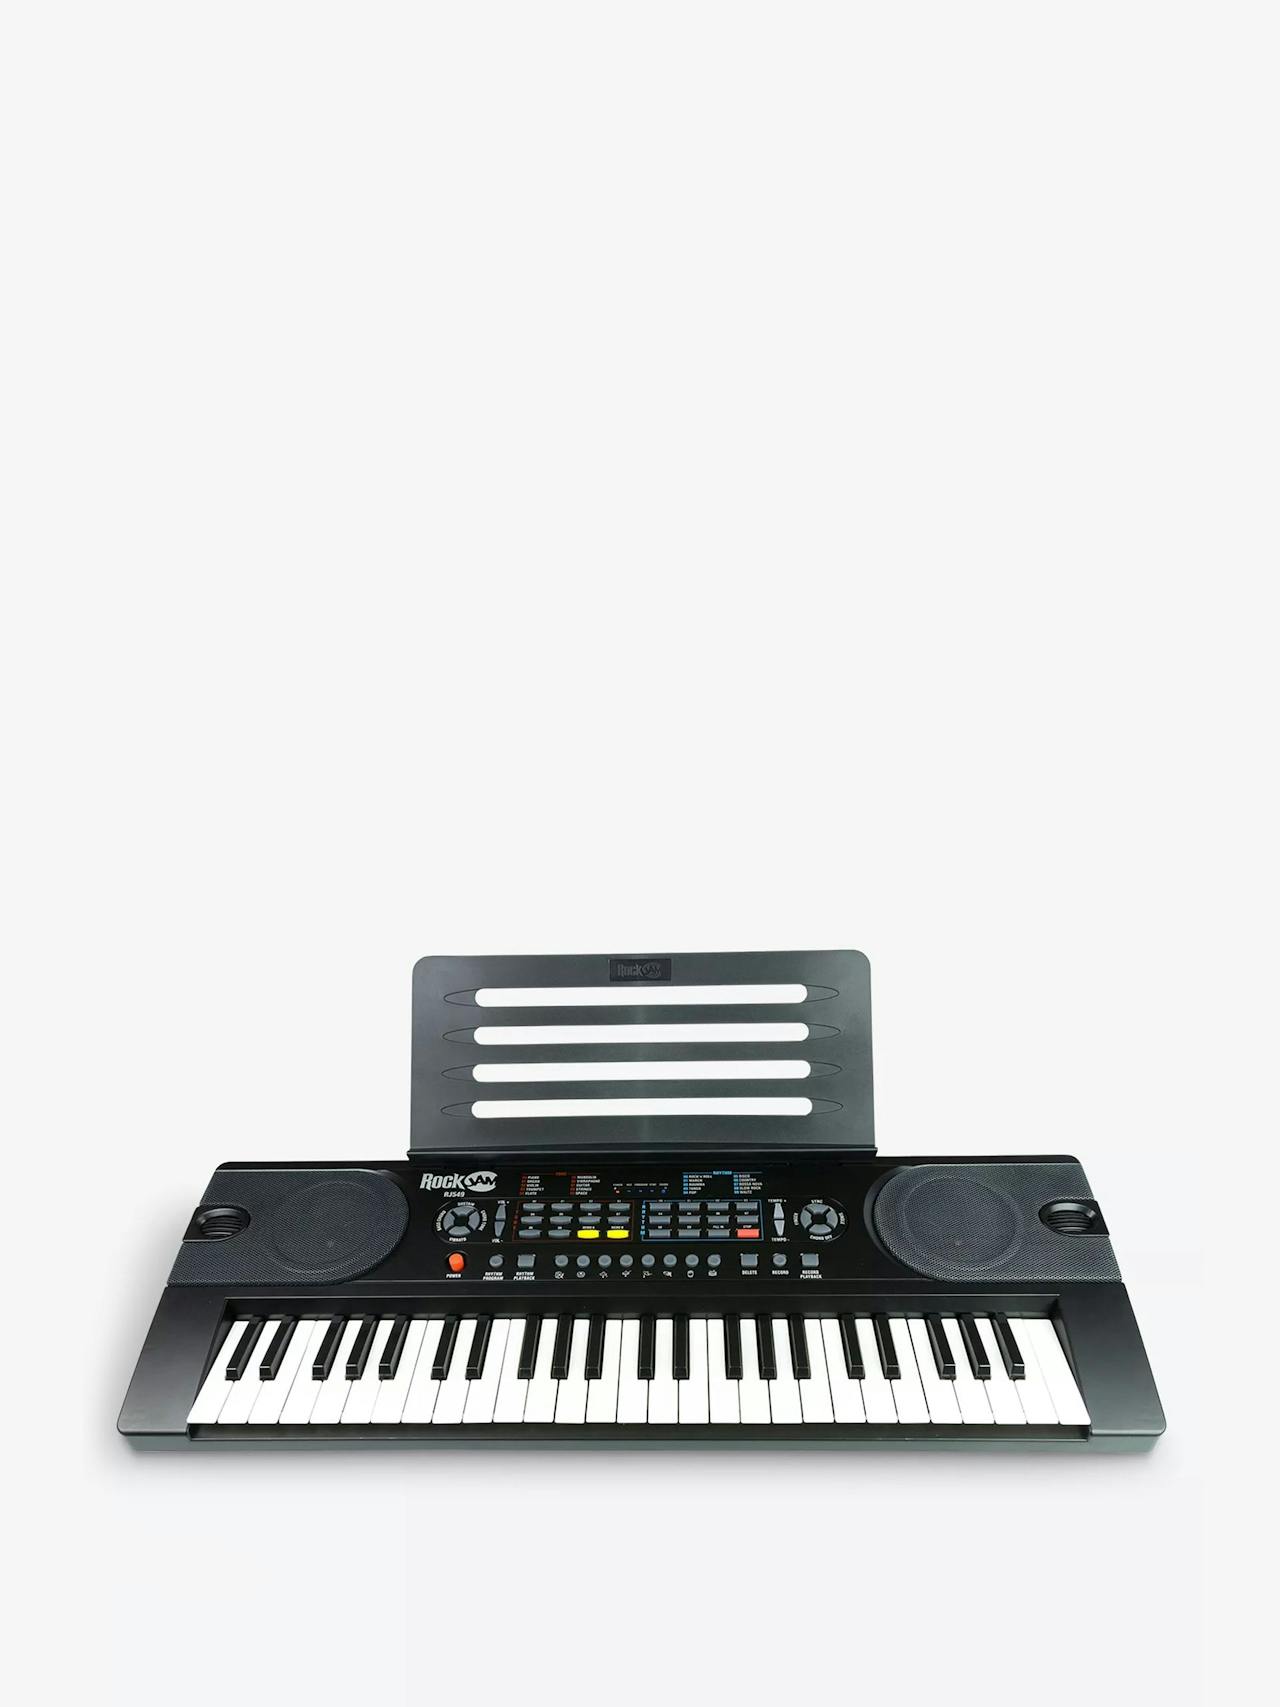 Rockjam RJ549 digital piano keyboard keyboard